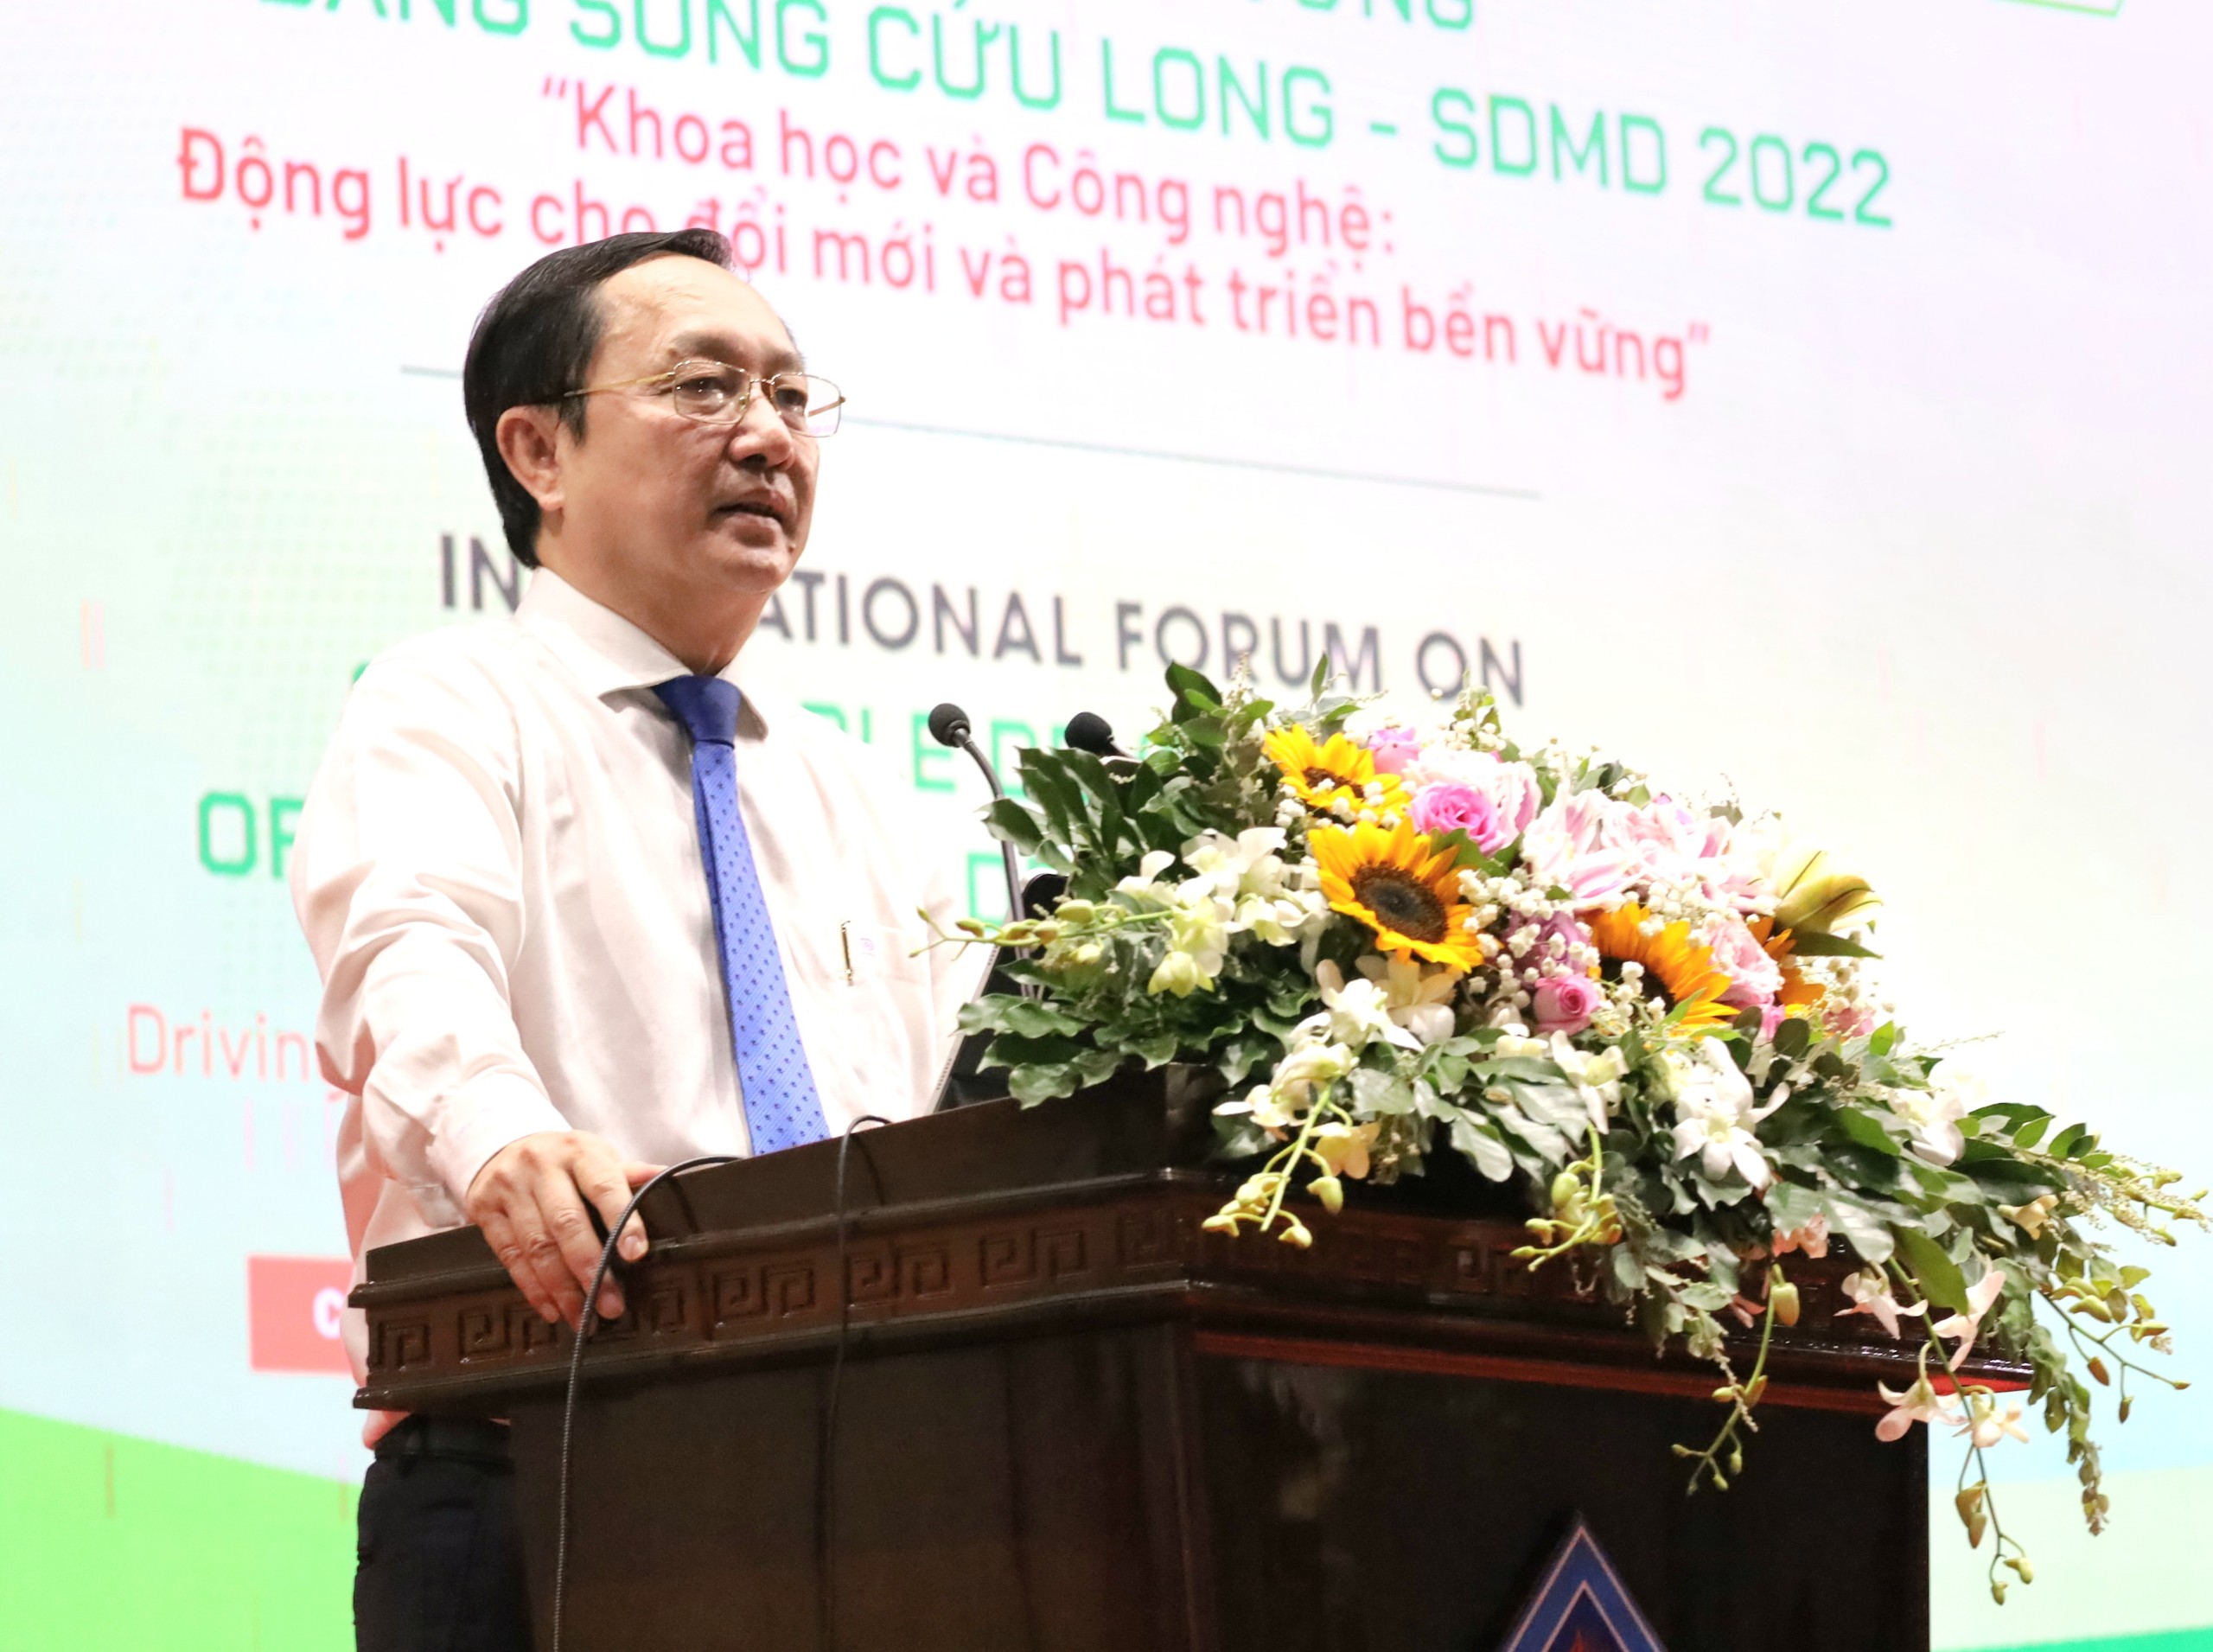 Ông Huỳnh Thành Đạt - Bộ trưởng Bộ Khoa học và Công nghệ phát biểu tại diễn đàn.